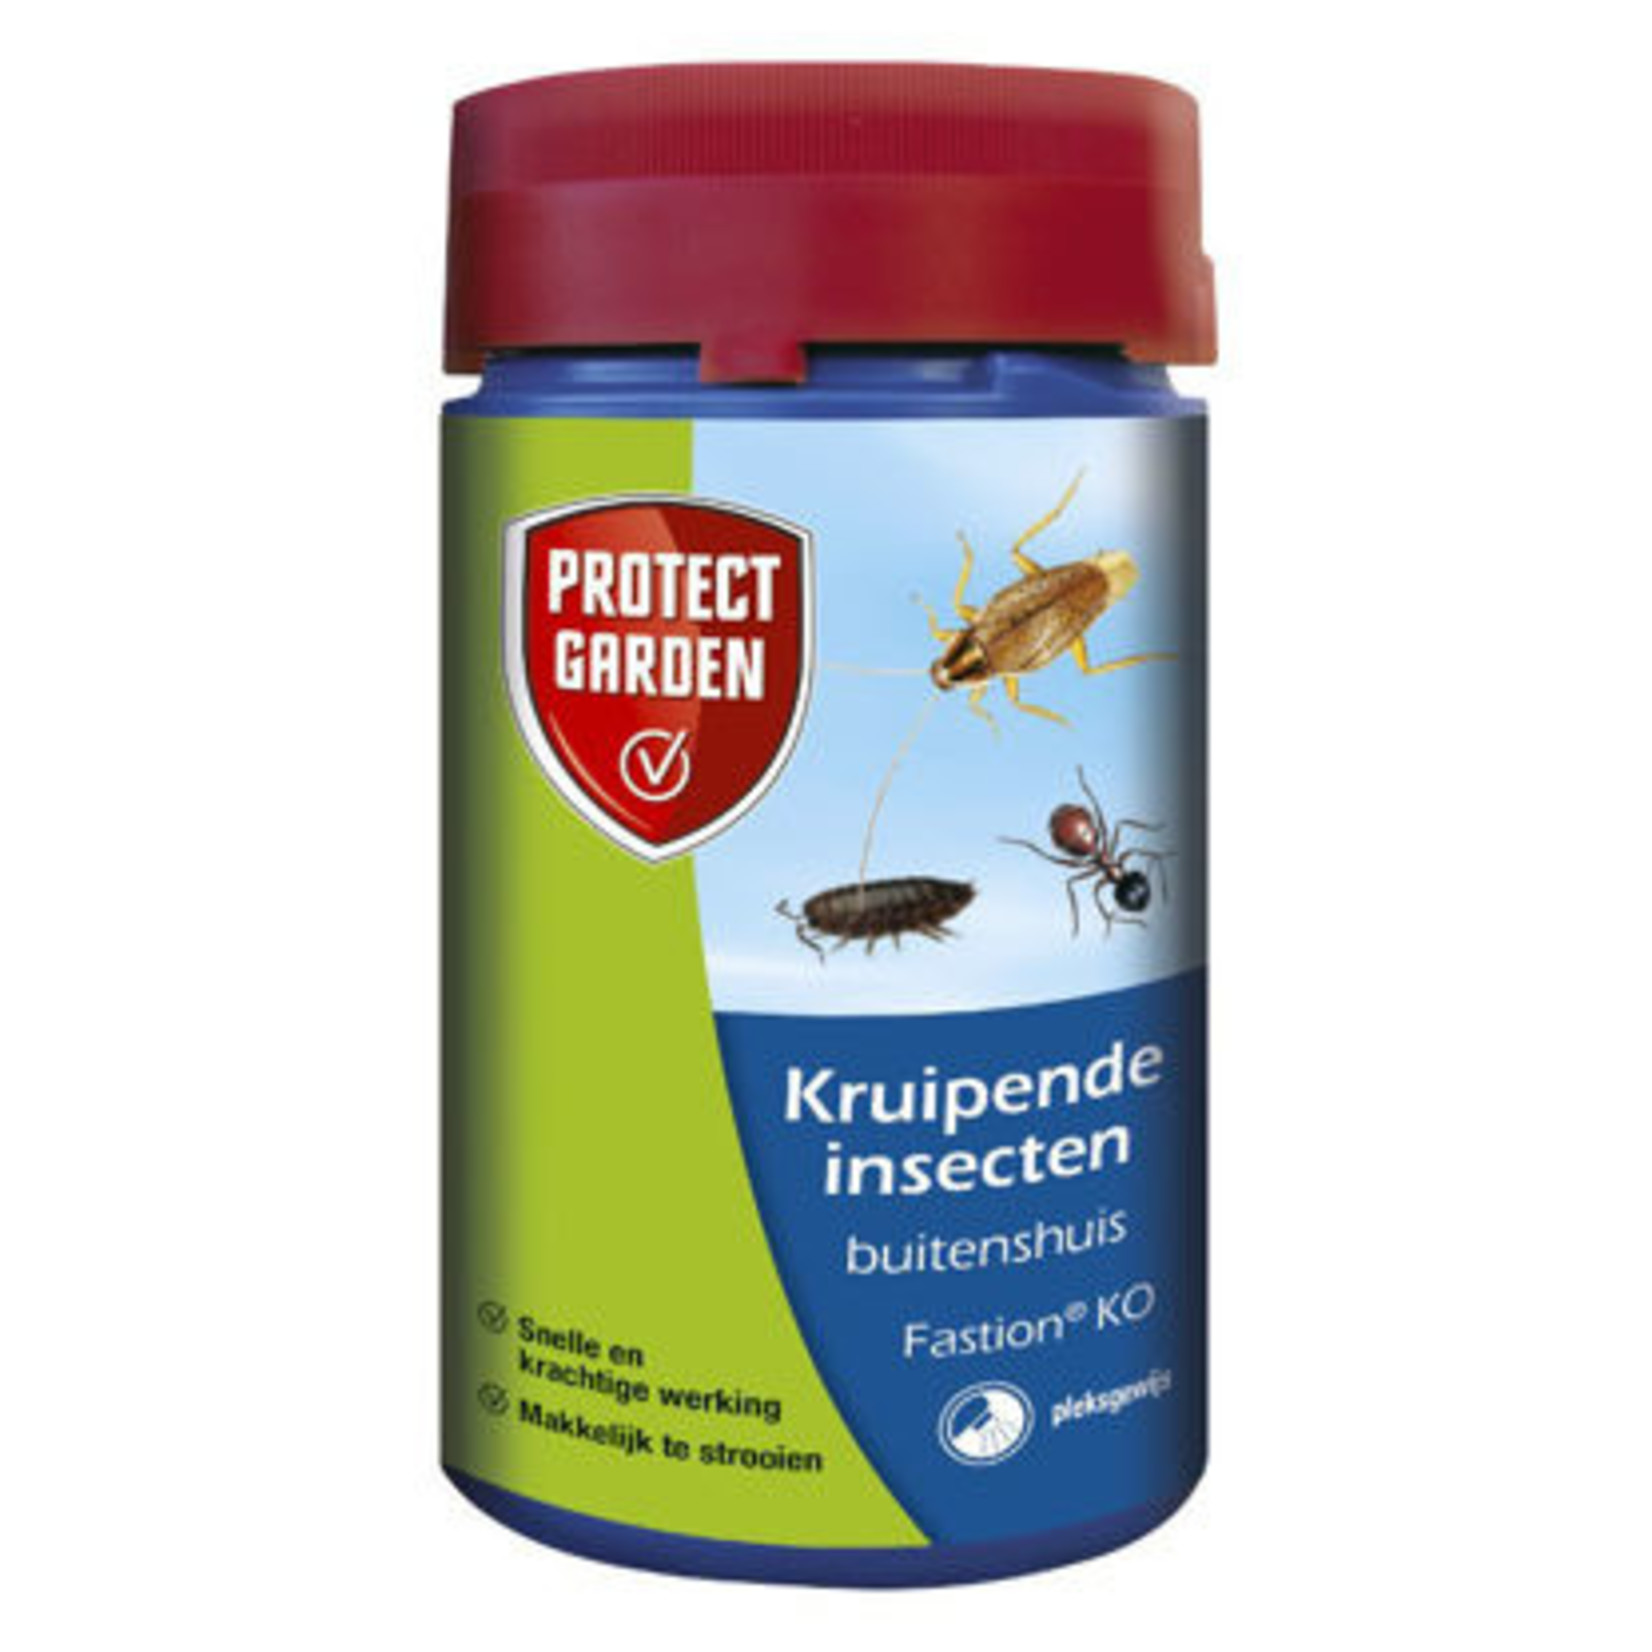 Fastion KO kruipende insecten 250gr. -Protect Garden-